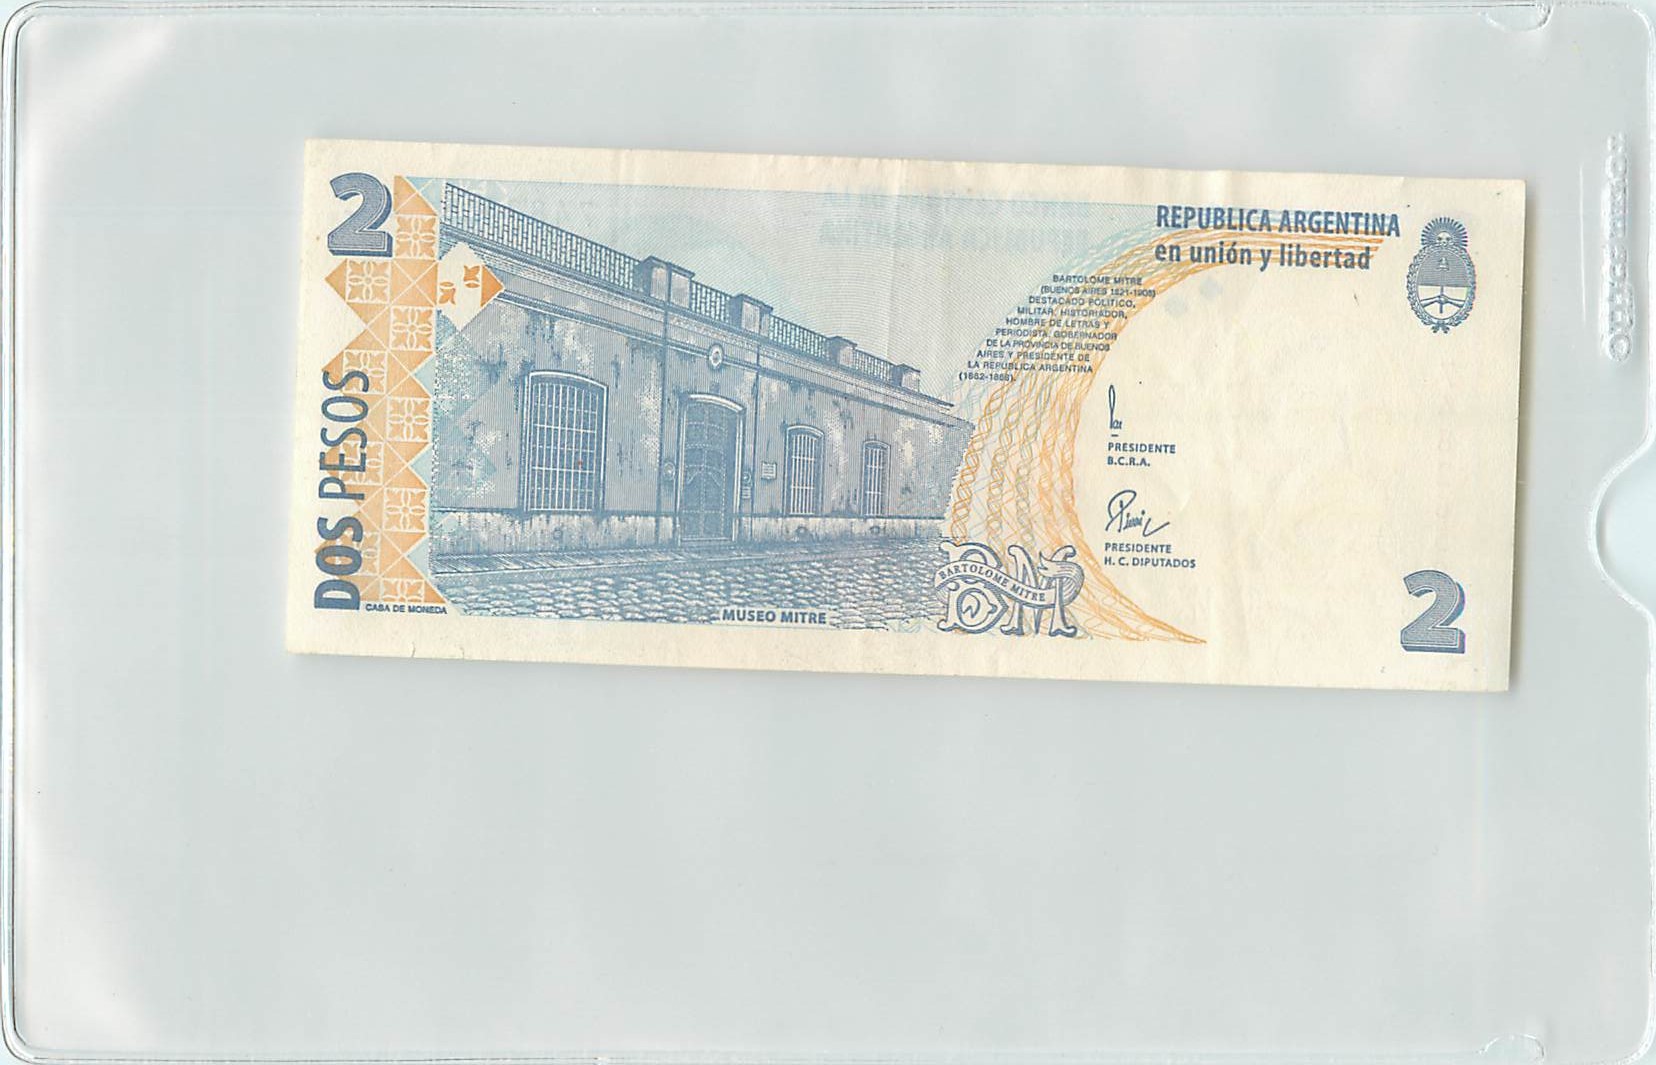 Argentina Dos Pesos 2002 Bartolome Mitre back 2015_08_11_11_44_500001.jpg